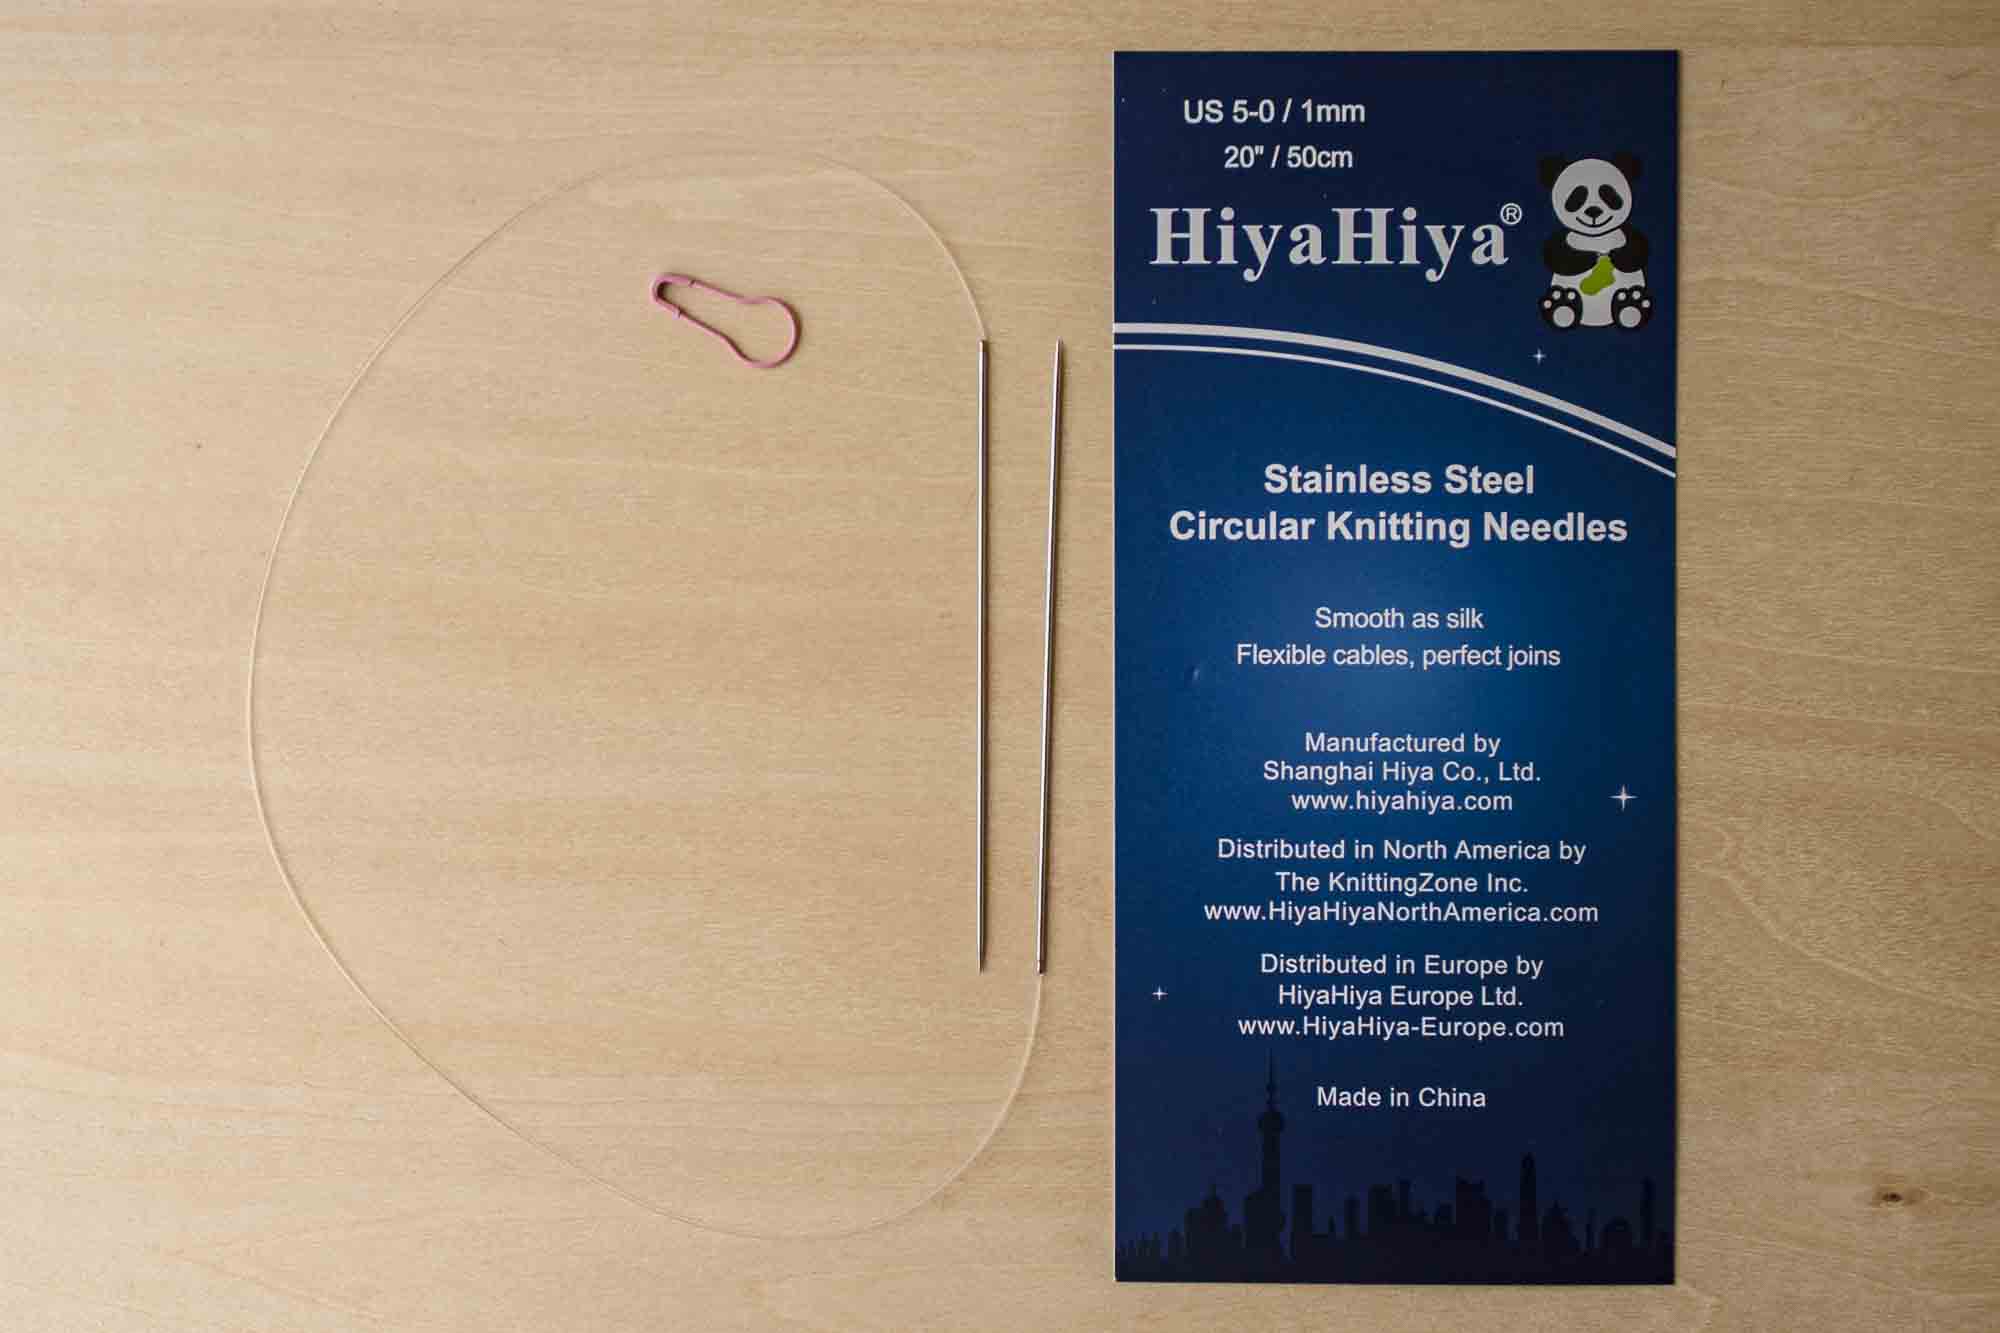 HiyaHiya Stainless Circular Needle 50cm